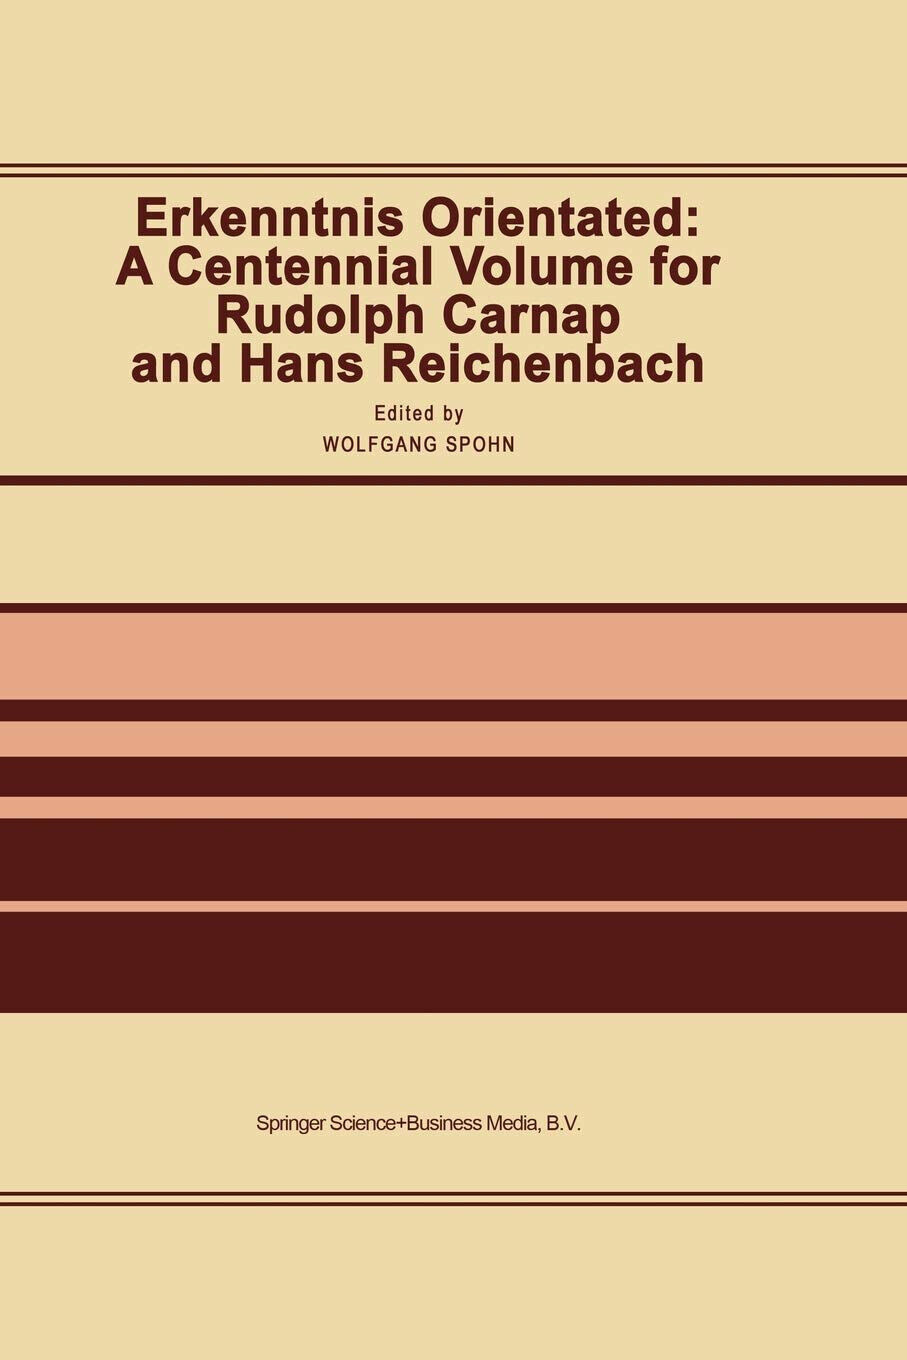 Erkenntnis Orientated: A Centennial Volume for Rudolf Carnap and Hans Reichenbac